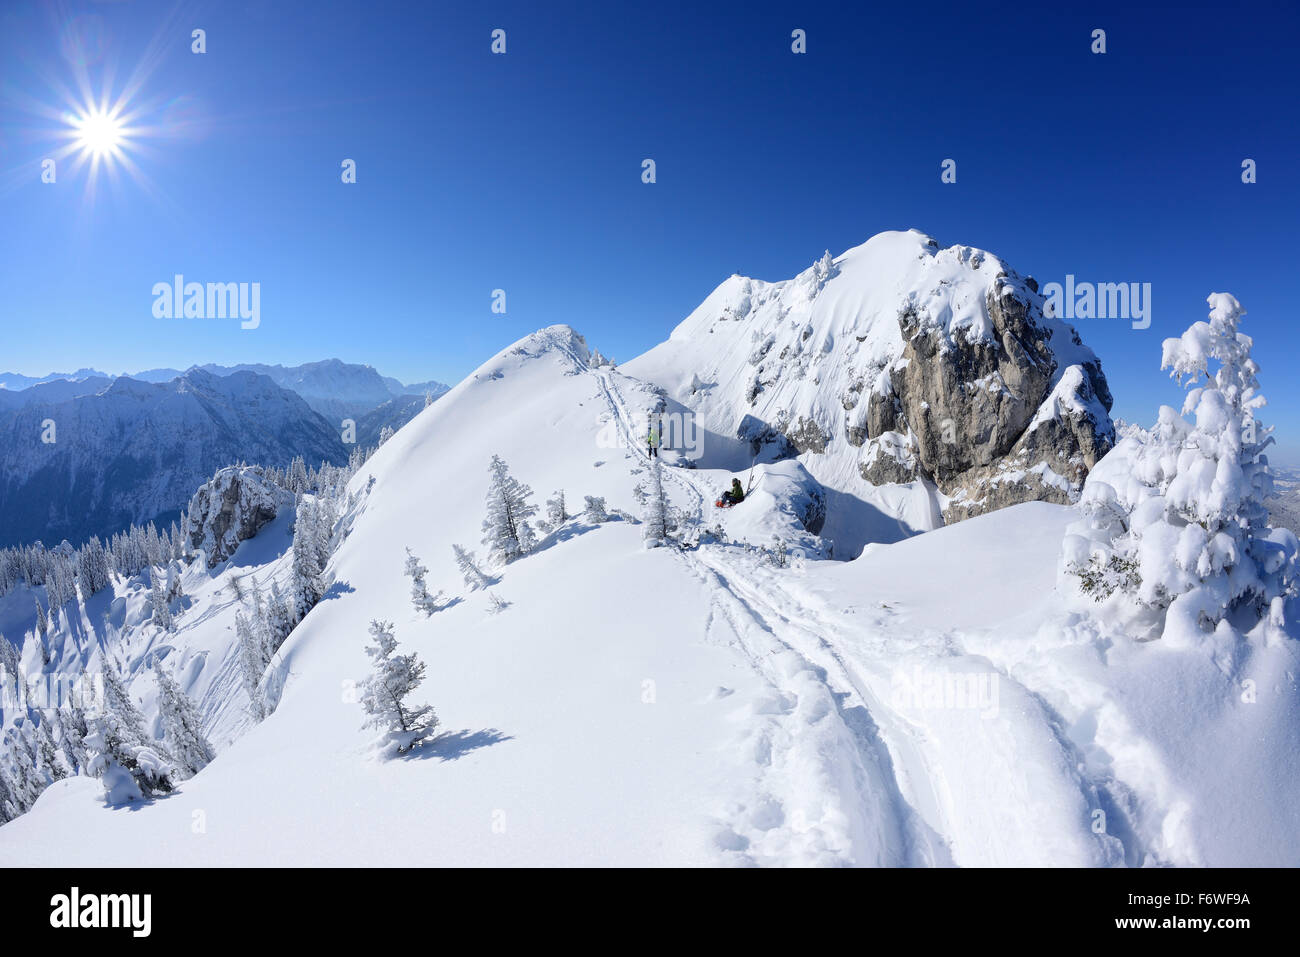 Snow-covered summit of Teufelstaettkopf, Teufelstaettkopf, Puerschling, Ammergauer Alps, Upper Bavaria, Bavaria, Germany Stock Photo